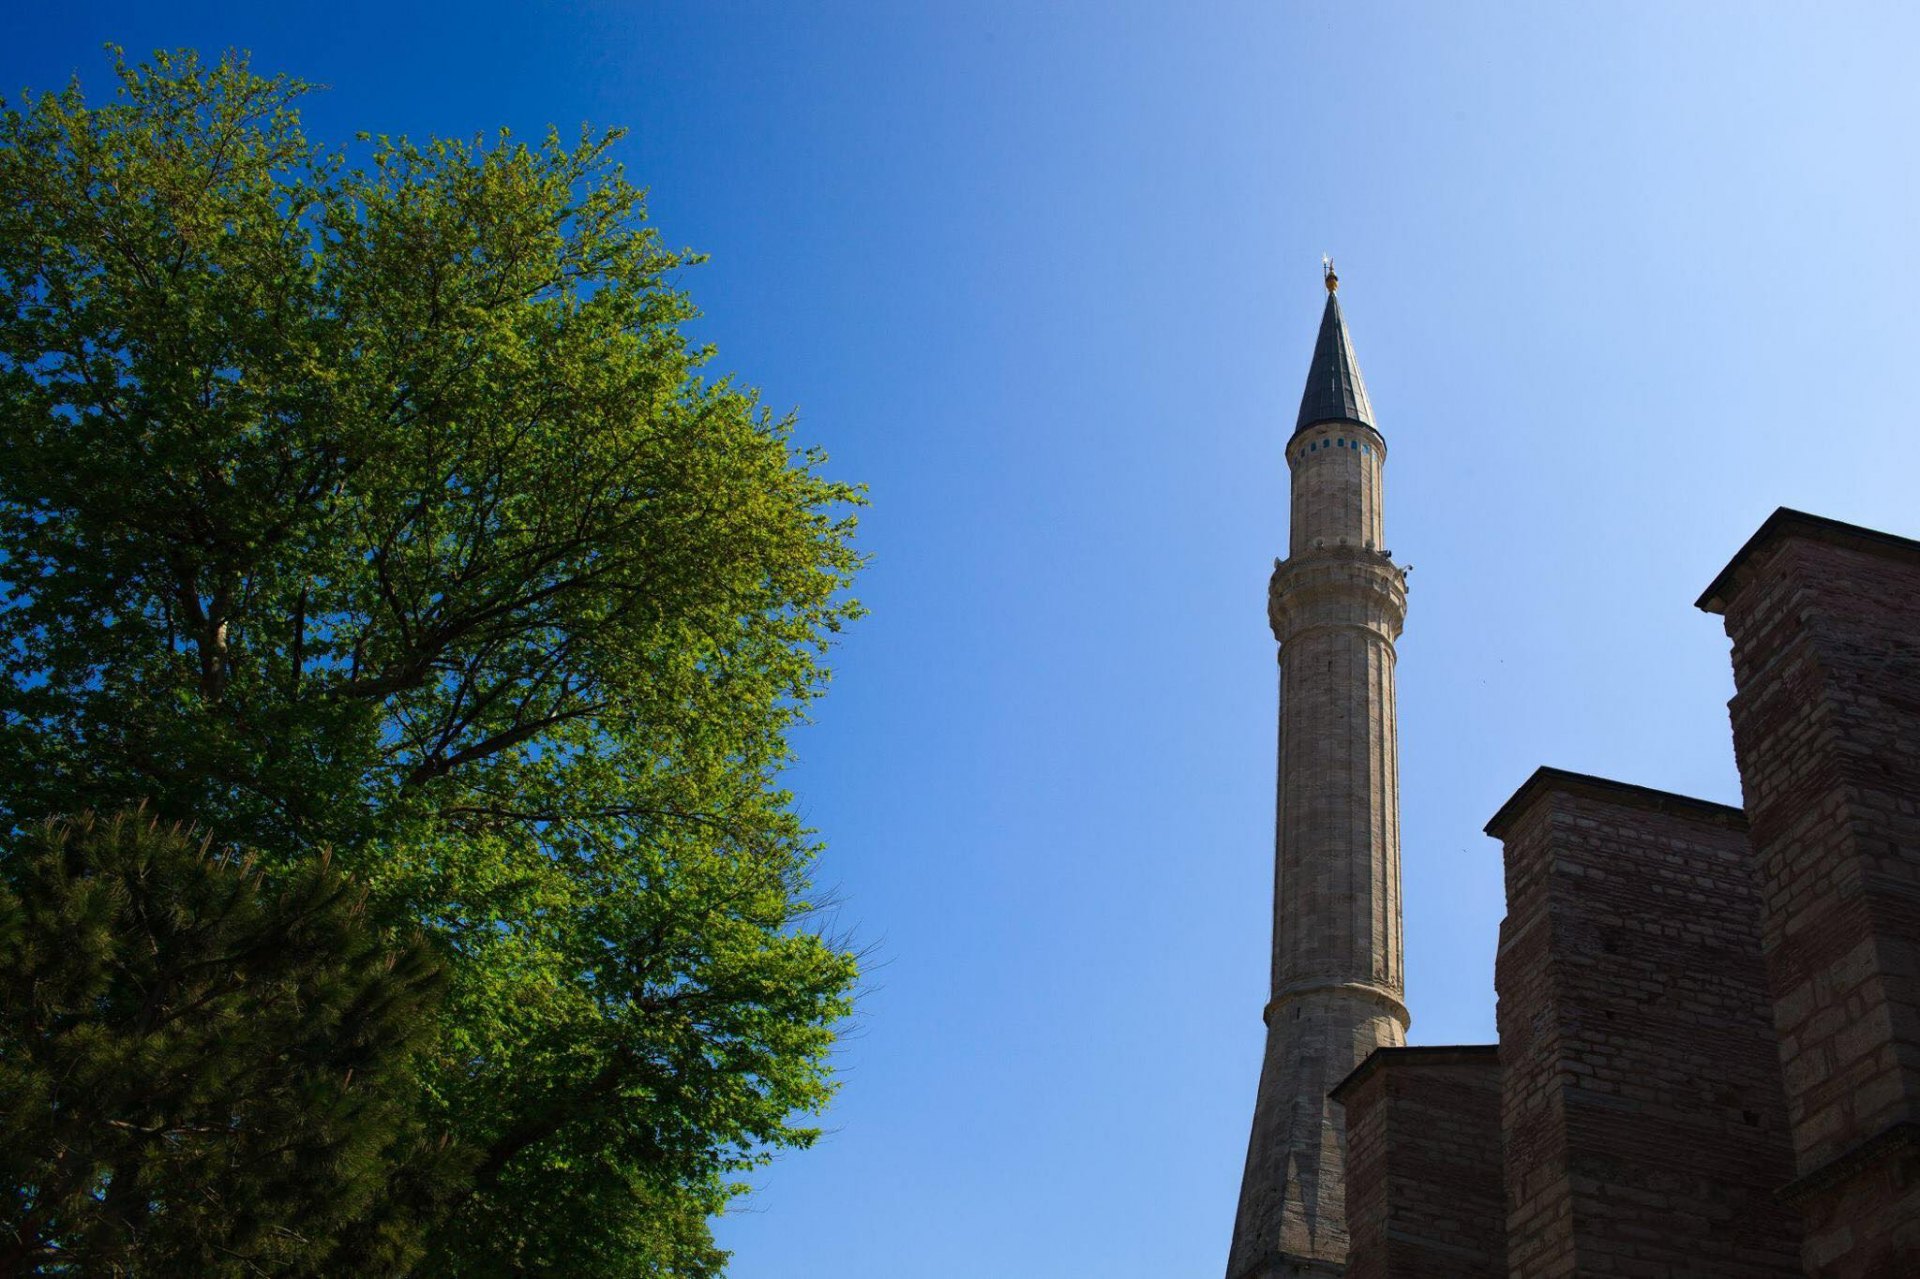 Một trong những ngọn tháp được thêm vào so với nguyên tác ban đầu của Nhà thờ Hagia Sophia, Istanbul. Nhà thờ này được xây dựng từ năm 532 đến năm 537 theo lệnh của Hoàng đế Byzantine Justinian và đã là Nhà thờ Trí tuệ Thánh thiêng thứ 3 được xây dựng tại địa điểm này (hai nhà thờ trước đã bị phá hủy bởi quân phiến loạn. Sau đó, đến thế kỉ thứ 15 trở thành thánh đường Hồi giáo và được Chính phủ Cộng hòa Thổ Nhĩ Kỳ chuyển thành Viện Bảo tàng Quốc gia vào năm 1935.